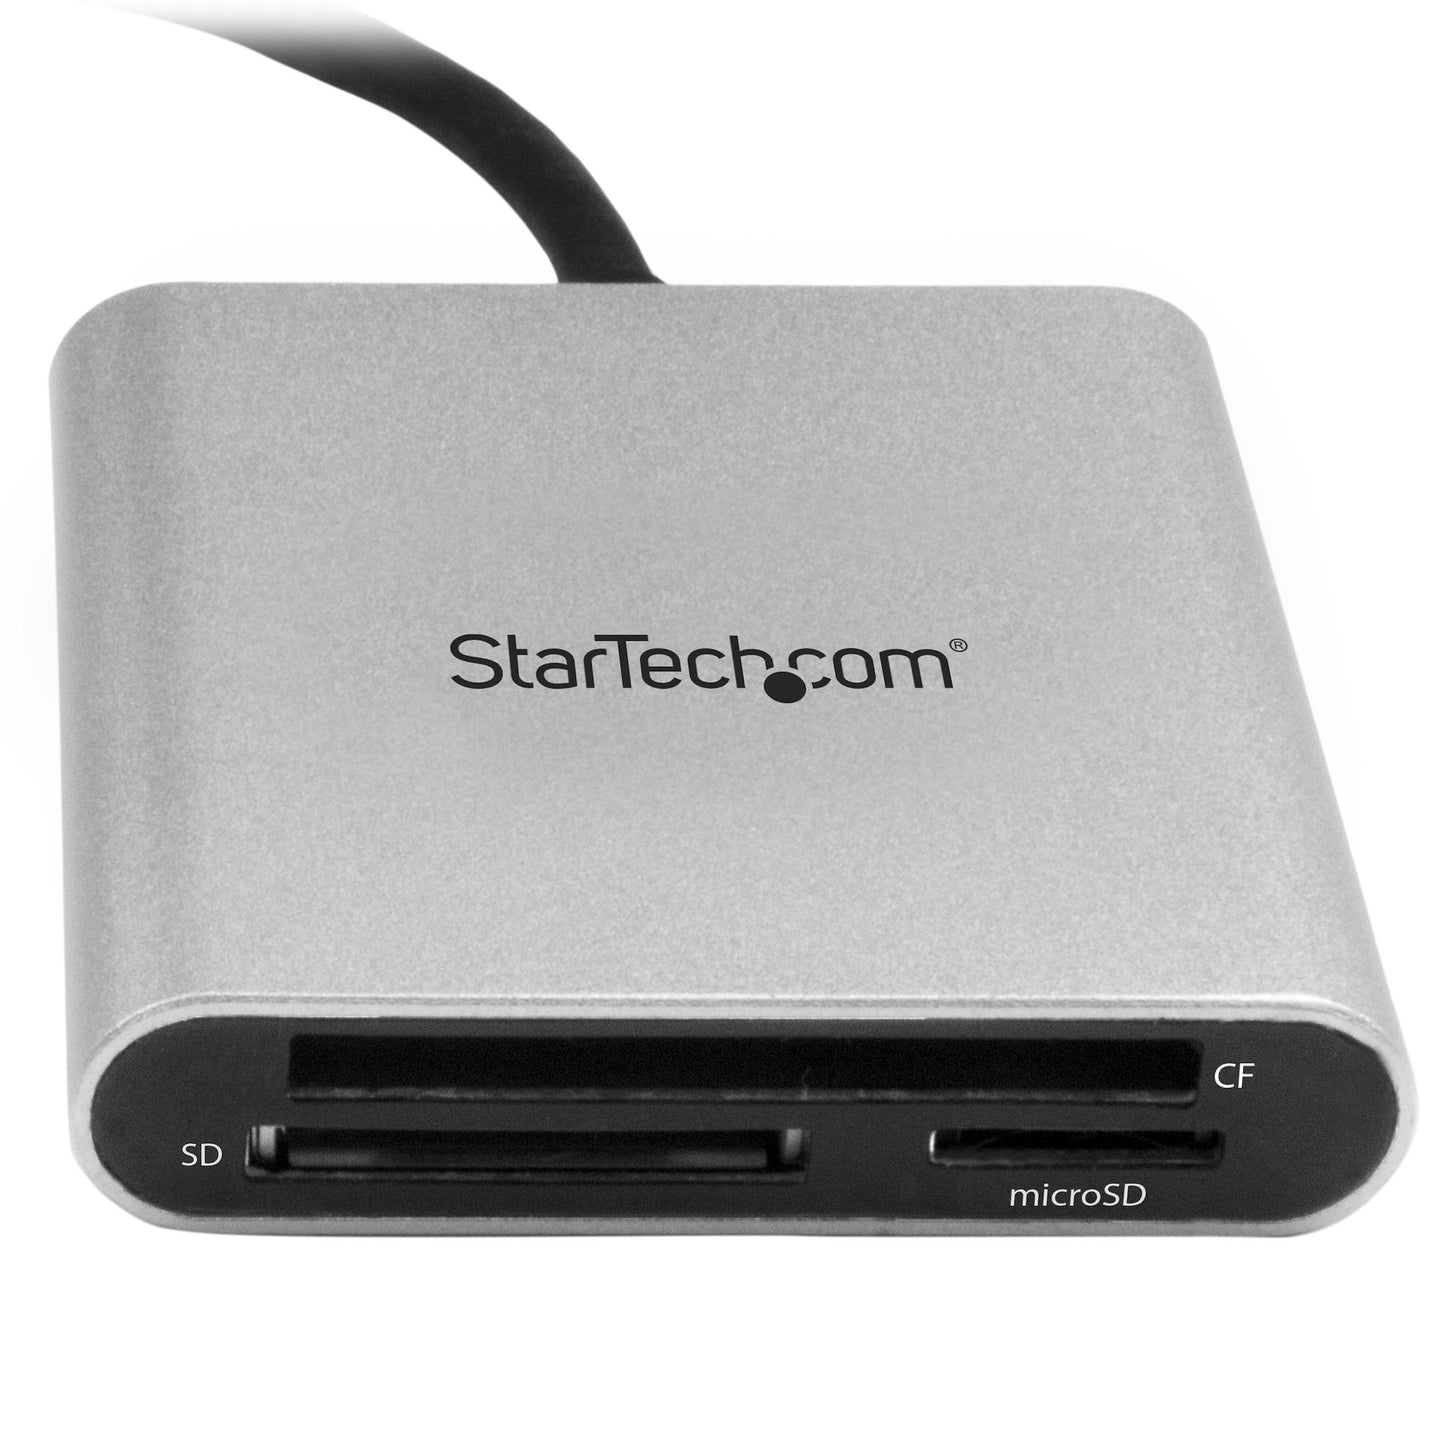 STARTECH CONSIG LECTOR GRABADOR USB-C DE EXT TARJETAS FLASH SD CF MICROSD